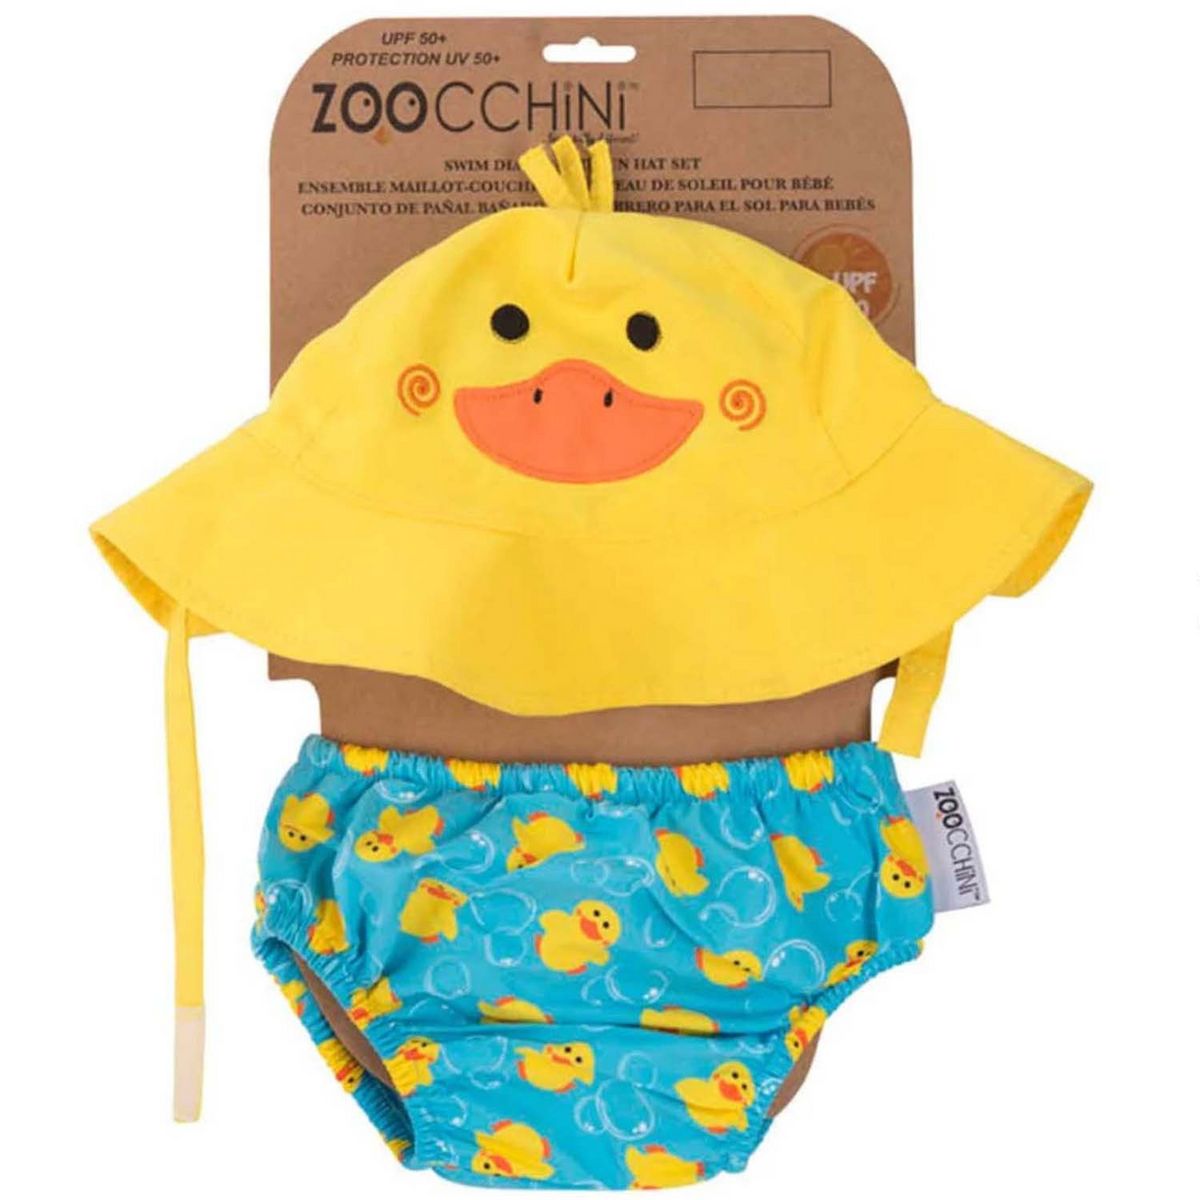  Maillot de bain - couche de bain et chapeau de soleil CANARD Zoocchini